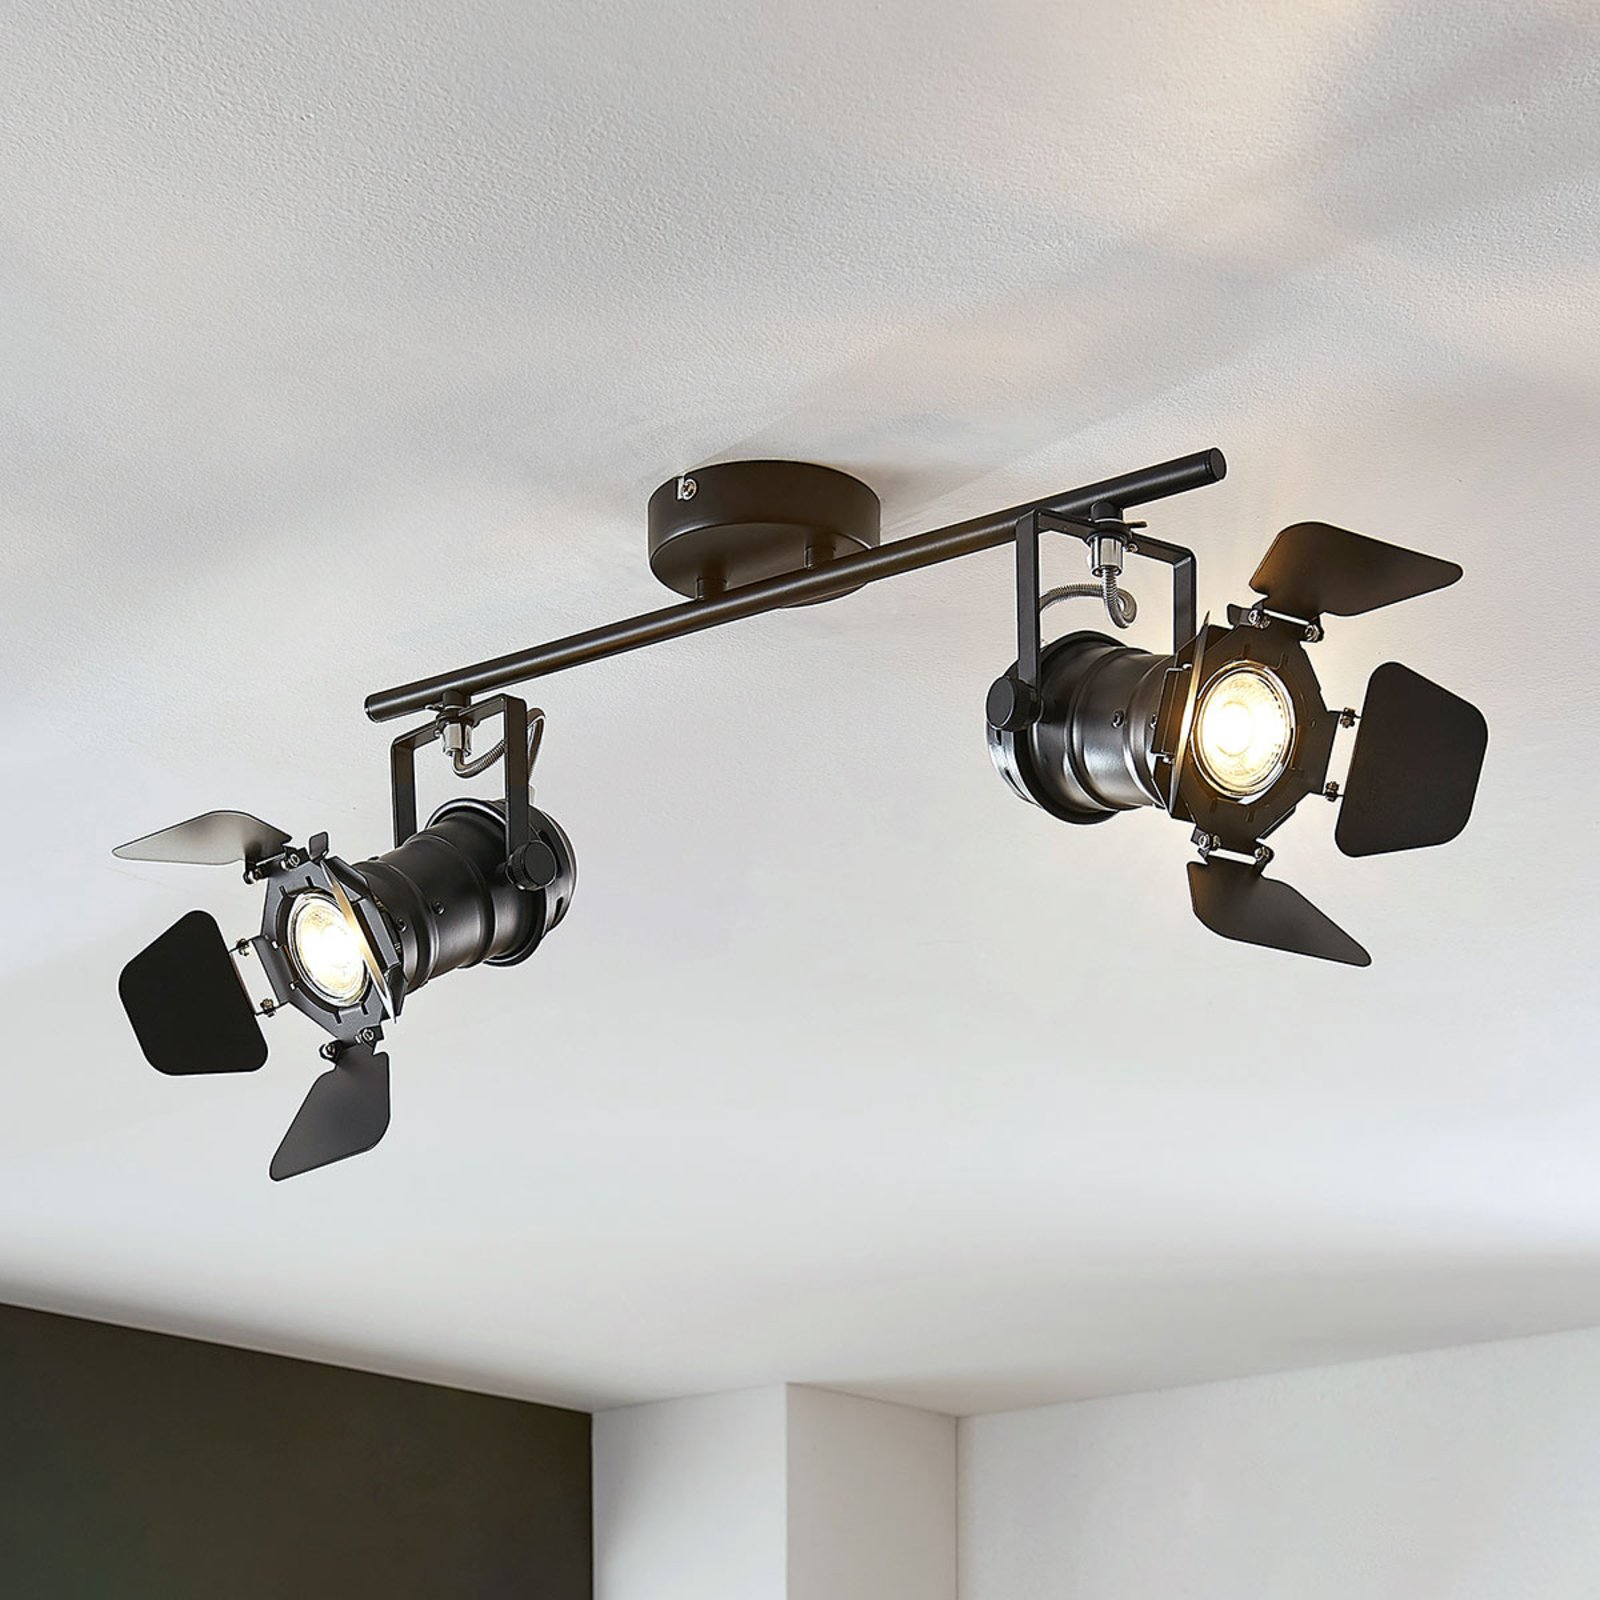 Tiles ceiling light, two-bulb, spotlight design